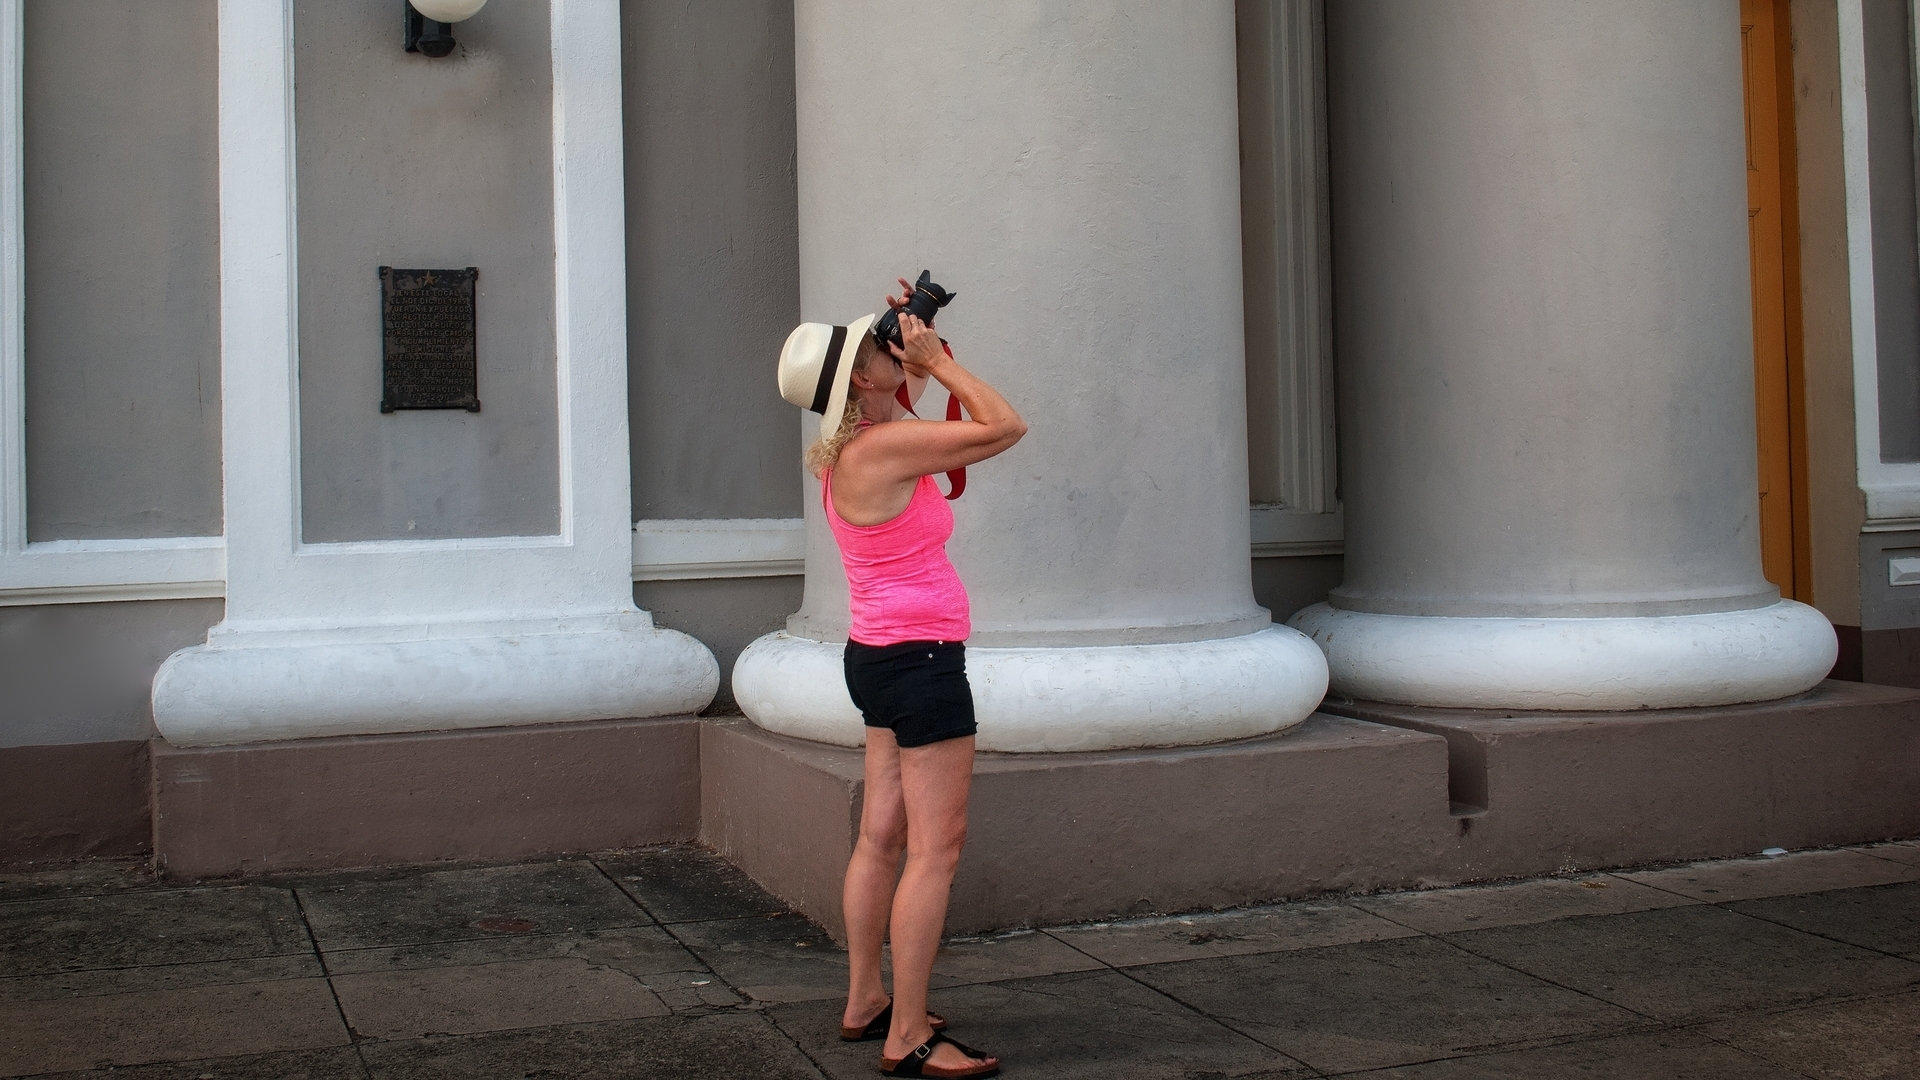 Solo Female Travel in Cienfuegos, Cuba